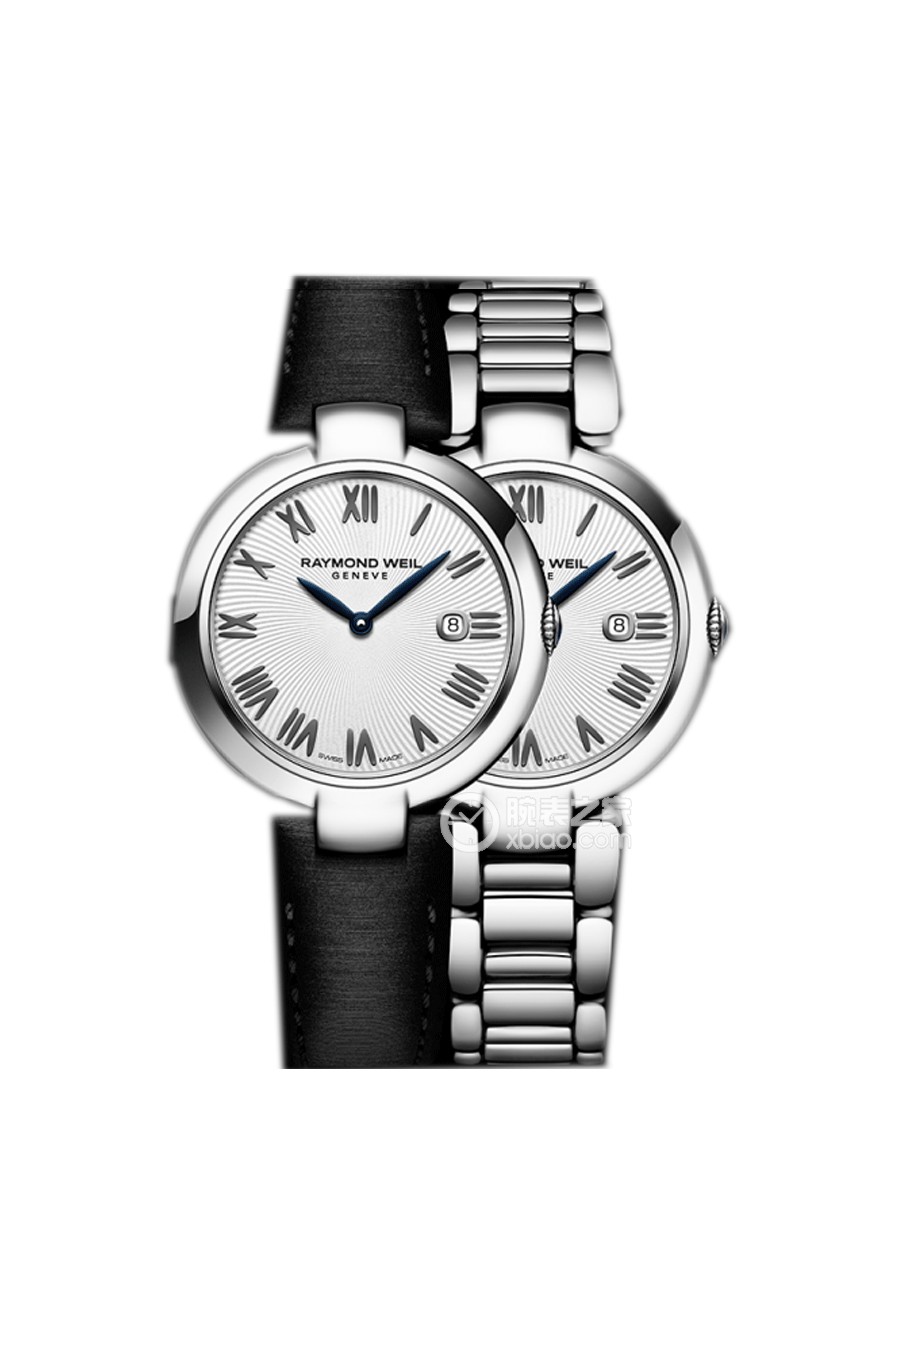 蕾蒙威女装腕表系列1600-ST-00659